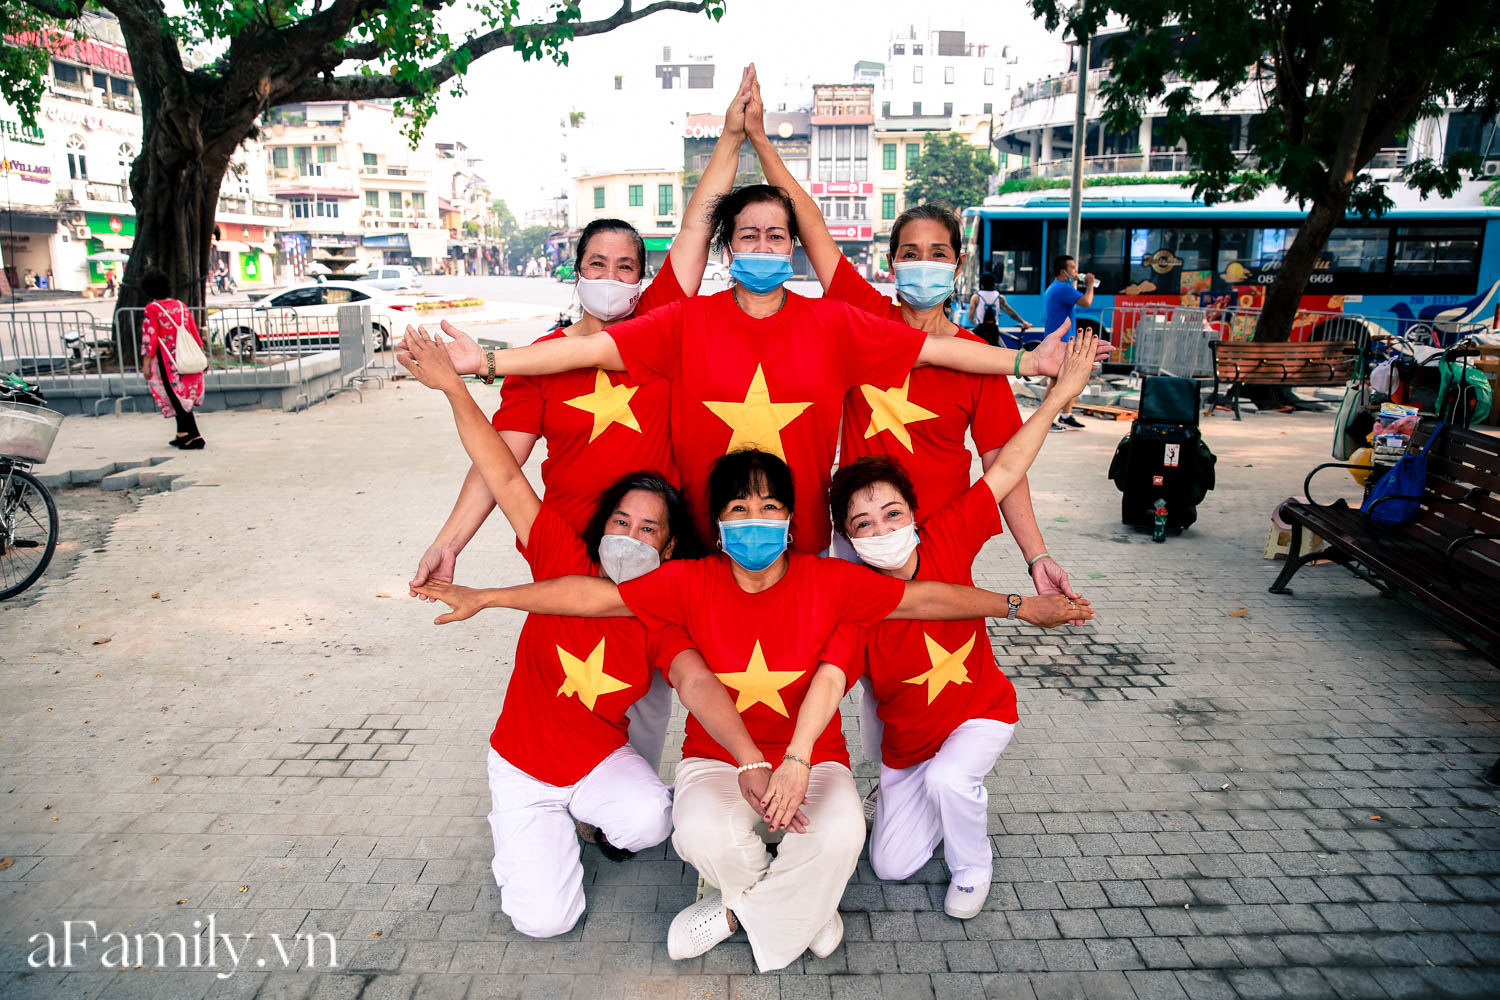 Phố phường vắng thanh, người dân mặc áo cờ Tổ quốc ra đường biểu diễn văn nghệ ngày Quốc khánh - Ảnh 9.